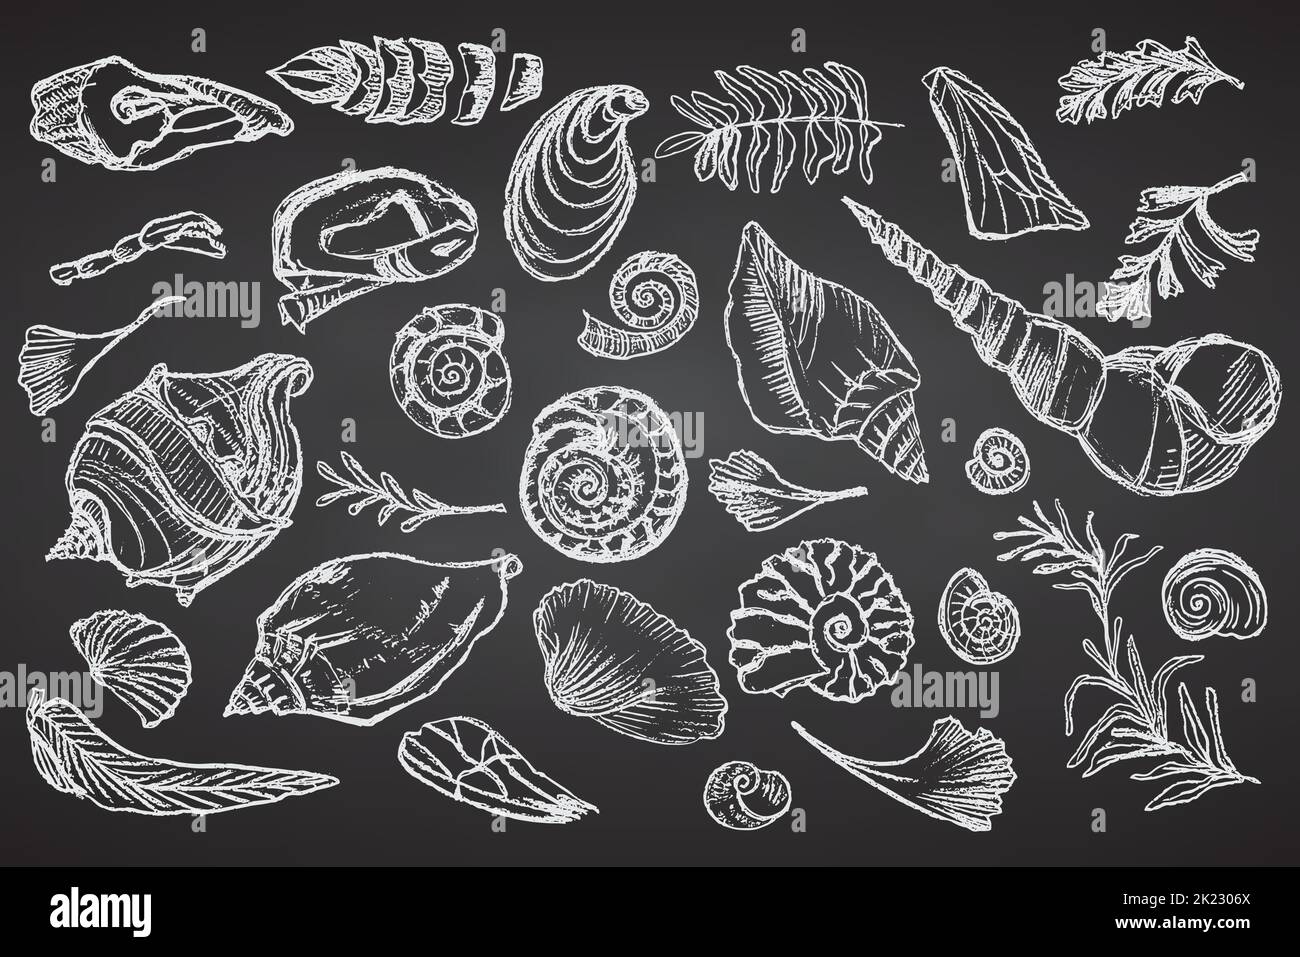 Set von Kreide Skizze Muscheln und Pflanzen auf schwarzem Brett handgezeichnete Ozeanschale oder Muschel Muschel Muschel Meer Unterwasser Tier fossil Nautisch und Stock Vektor